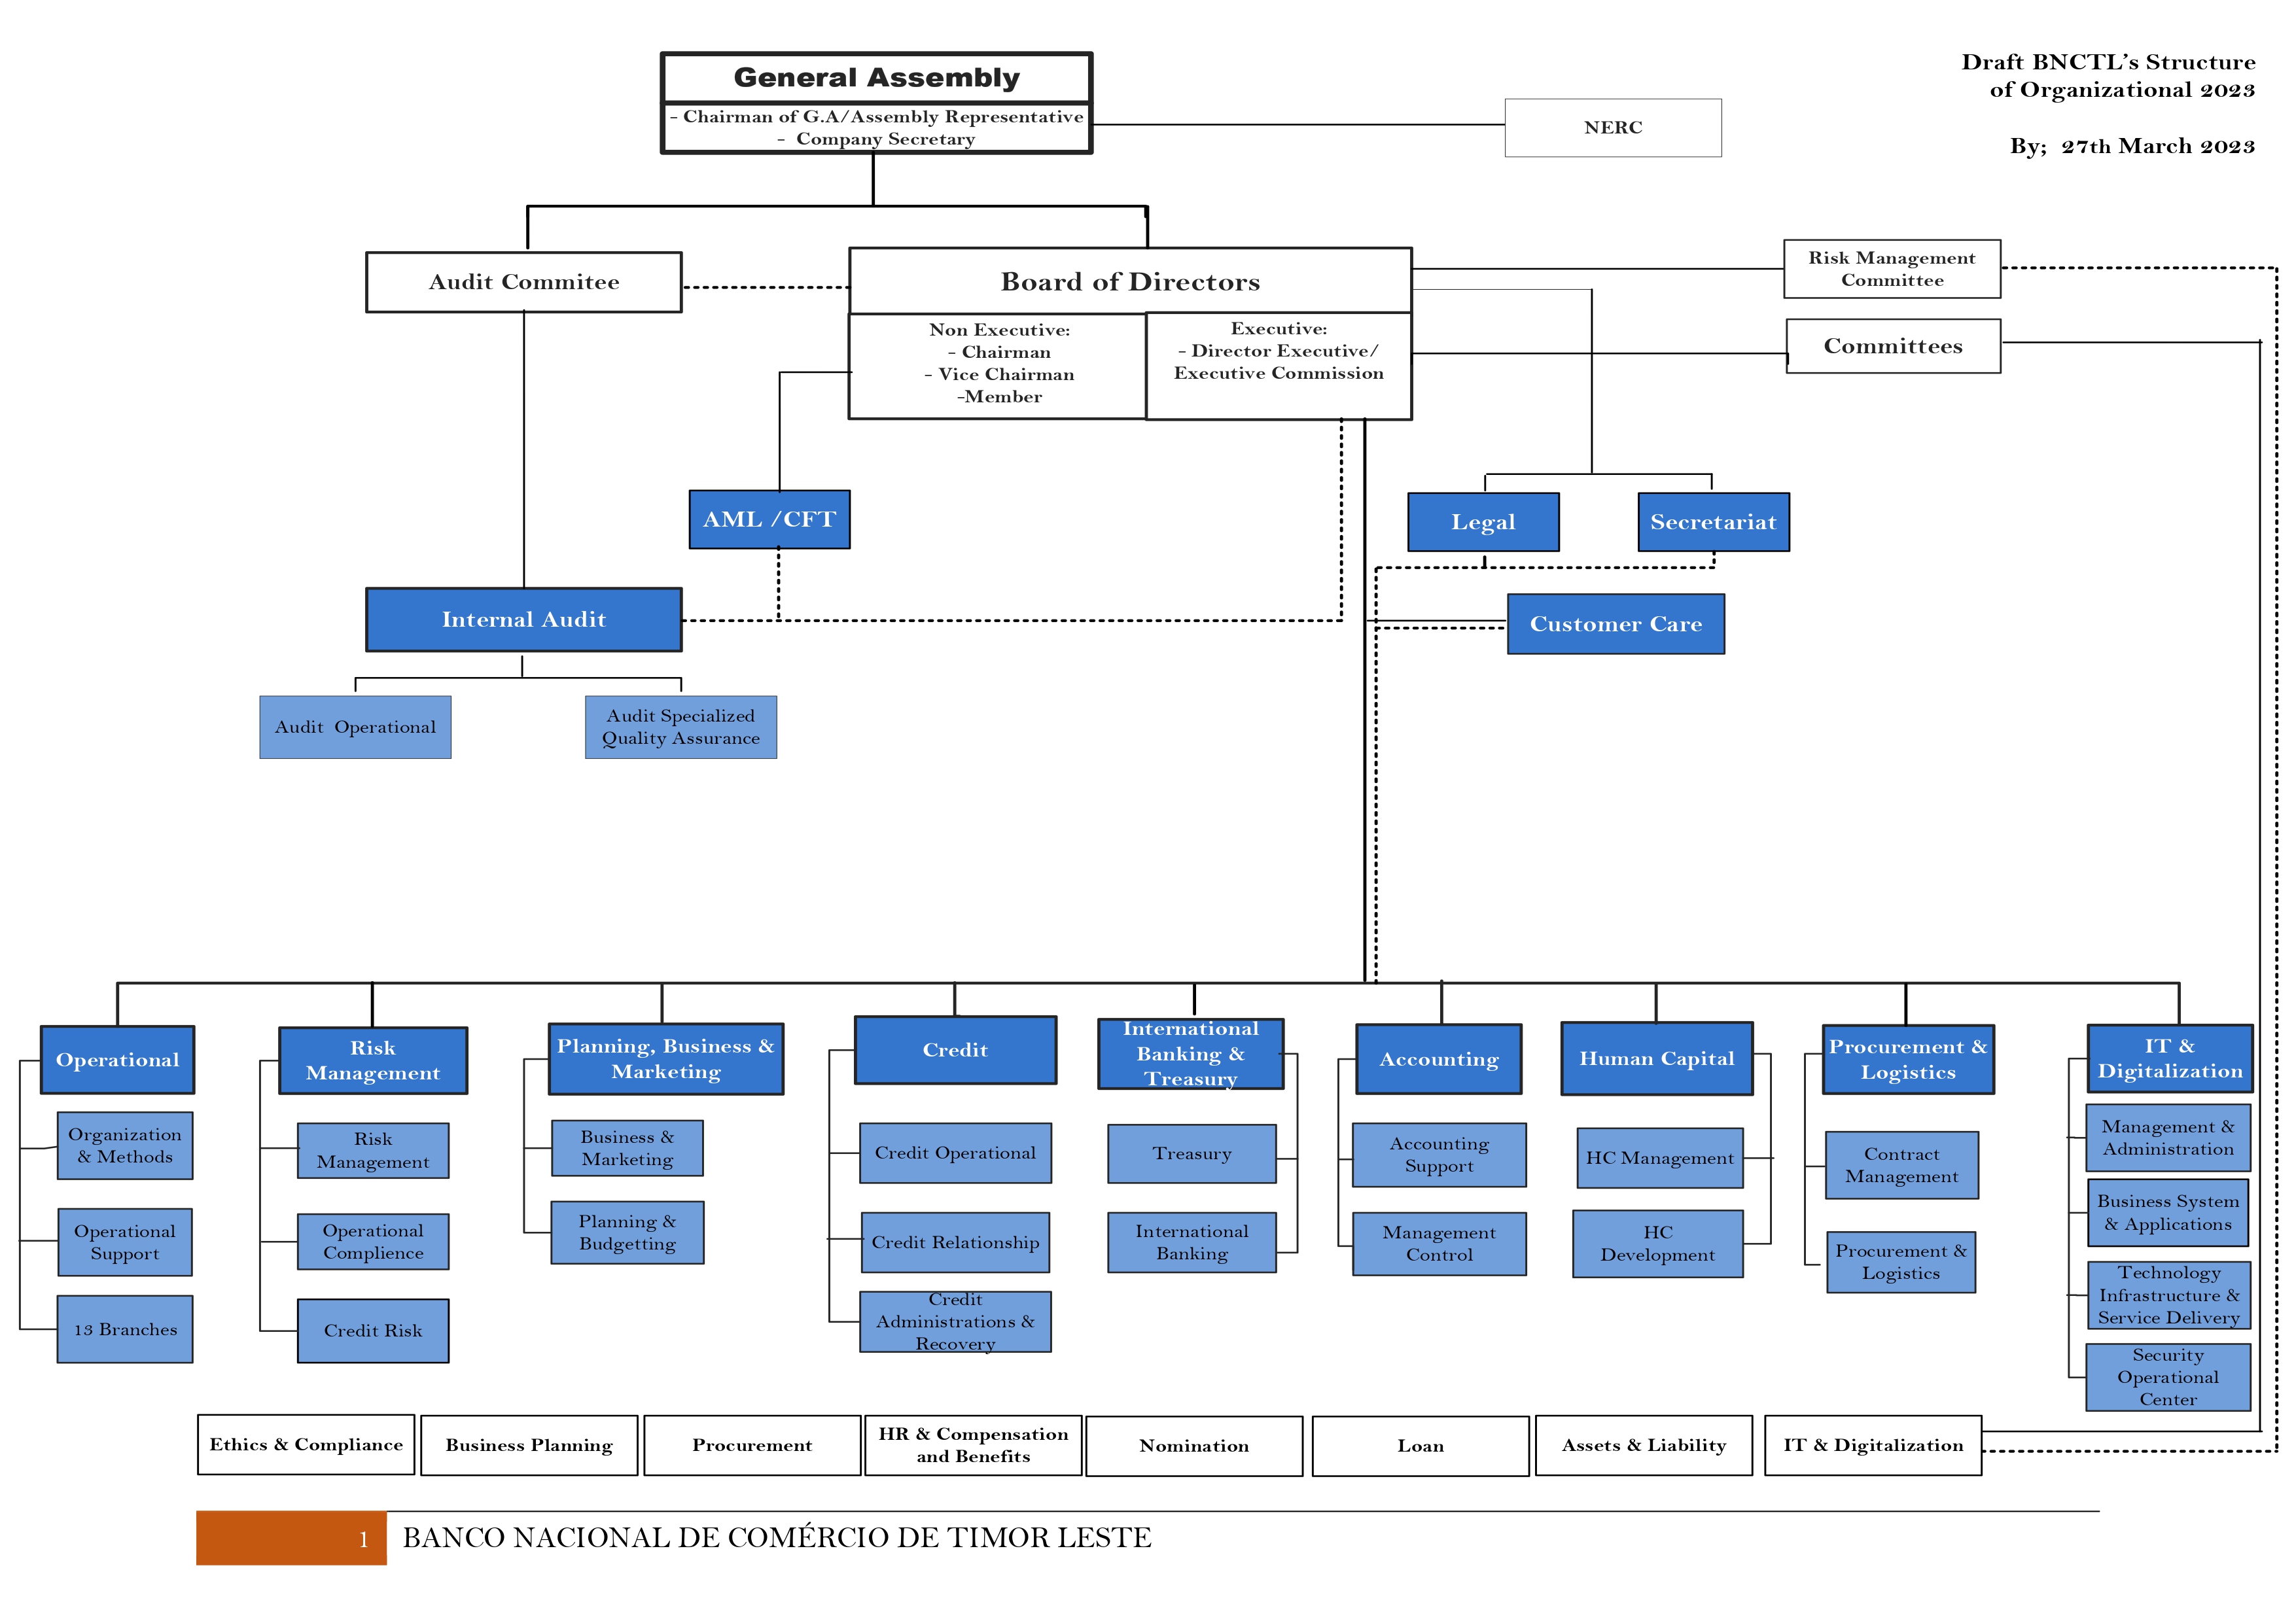 bnclt organization structure